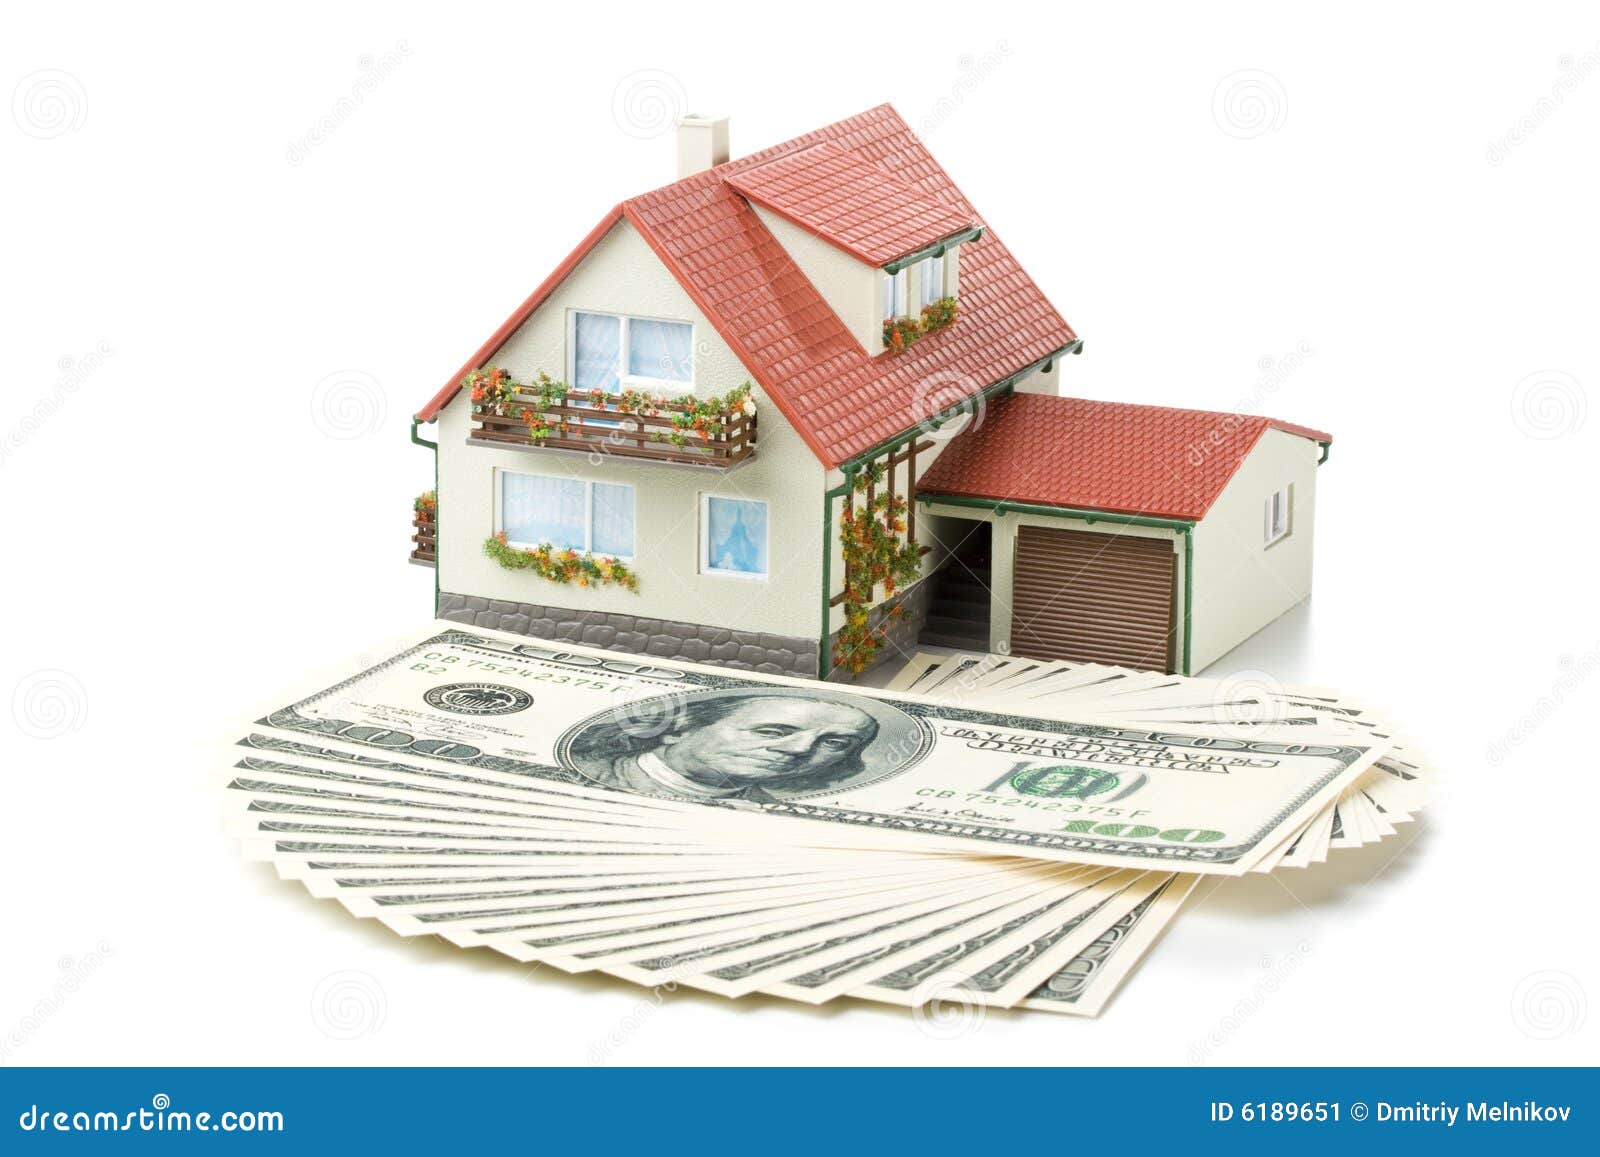 Размер кредитов на строительство. Деньги на дом. Деньги стройка. Инвестиции в дом. Ссуда на строительство дома.